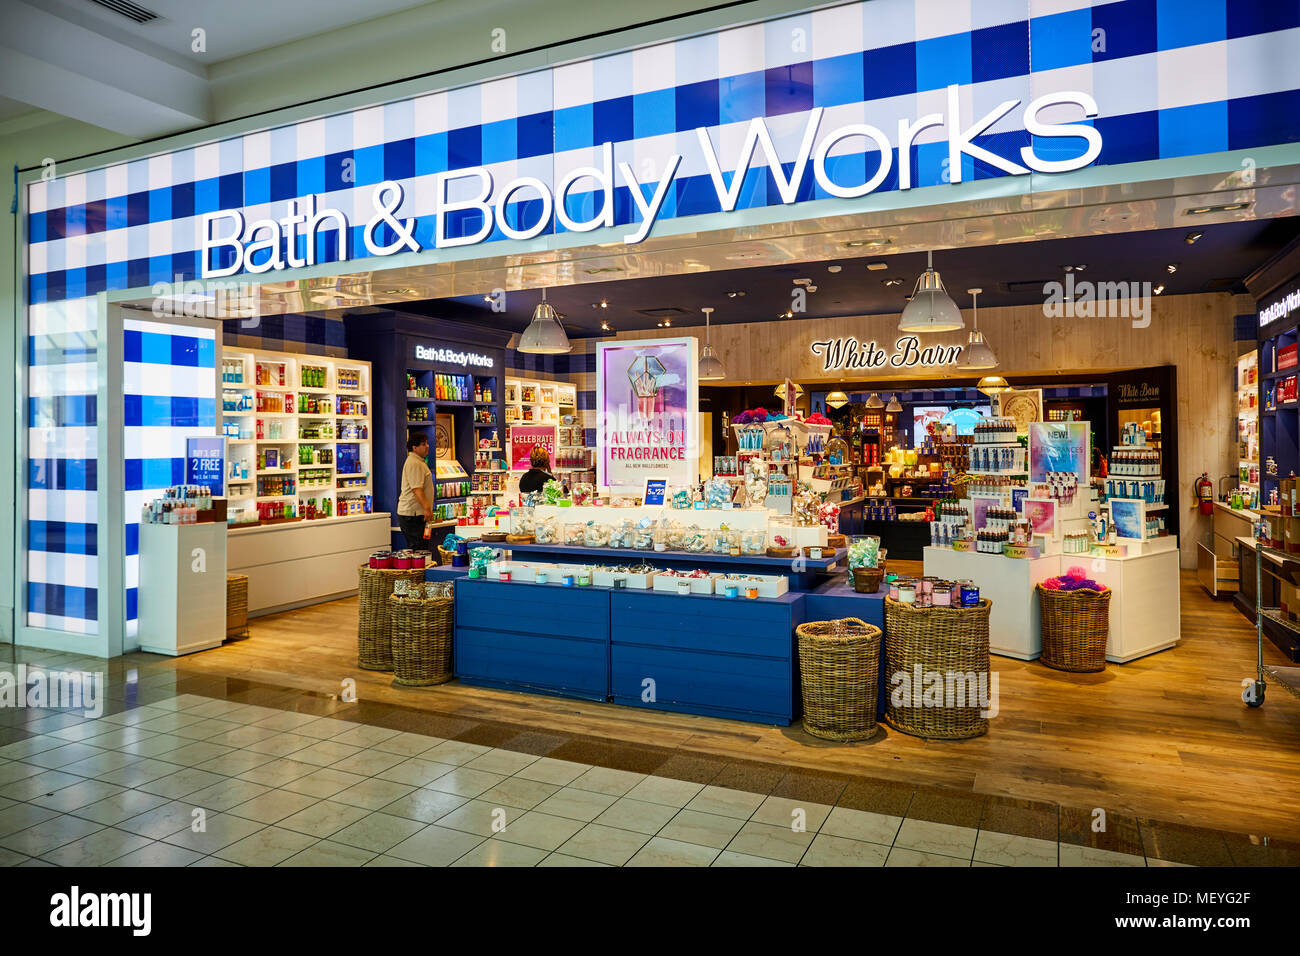 Atlanta capitale de l'état américain de Géorgie, le Bath & Body Works  magasin dans un centre commercial Lenox Square Mall avec nom de la marque  bien connue sur les magasins Photo Stock -